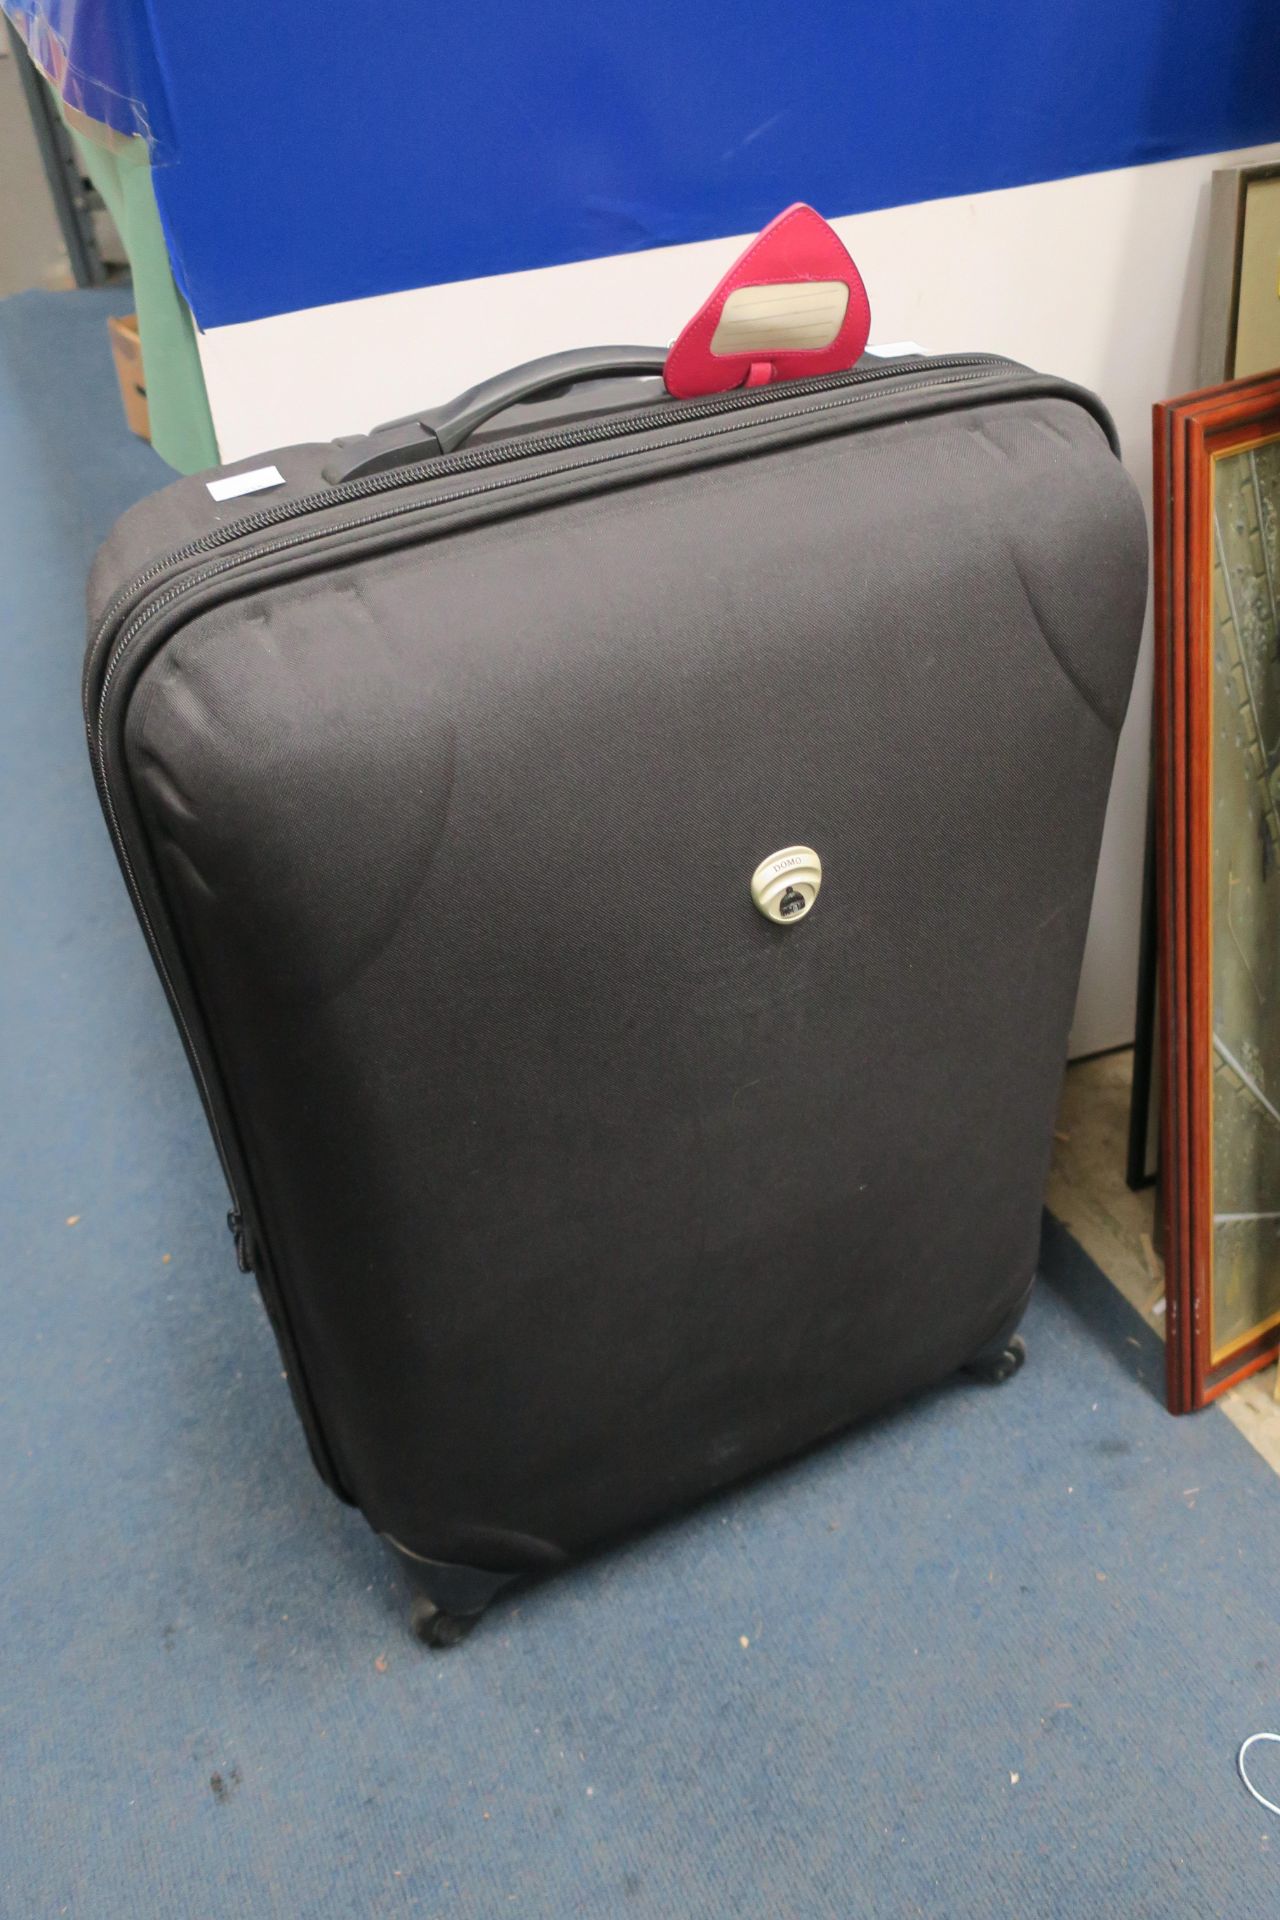 Domo mobile zipped Suitcase/Luggage